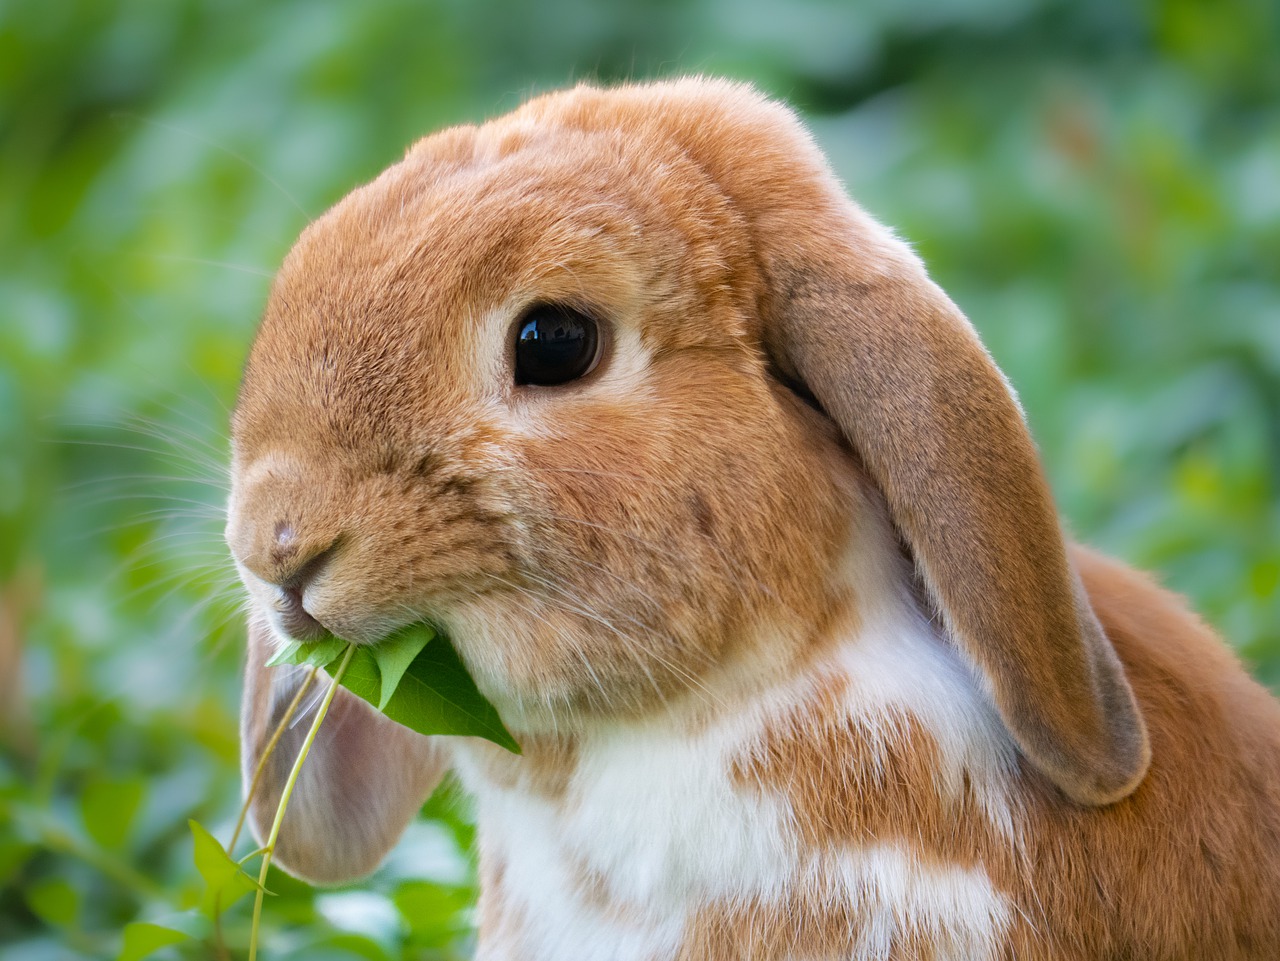 兔子的长耳朵还有散热的作用